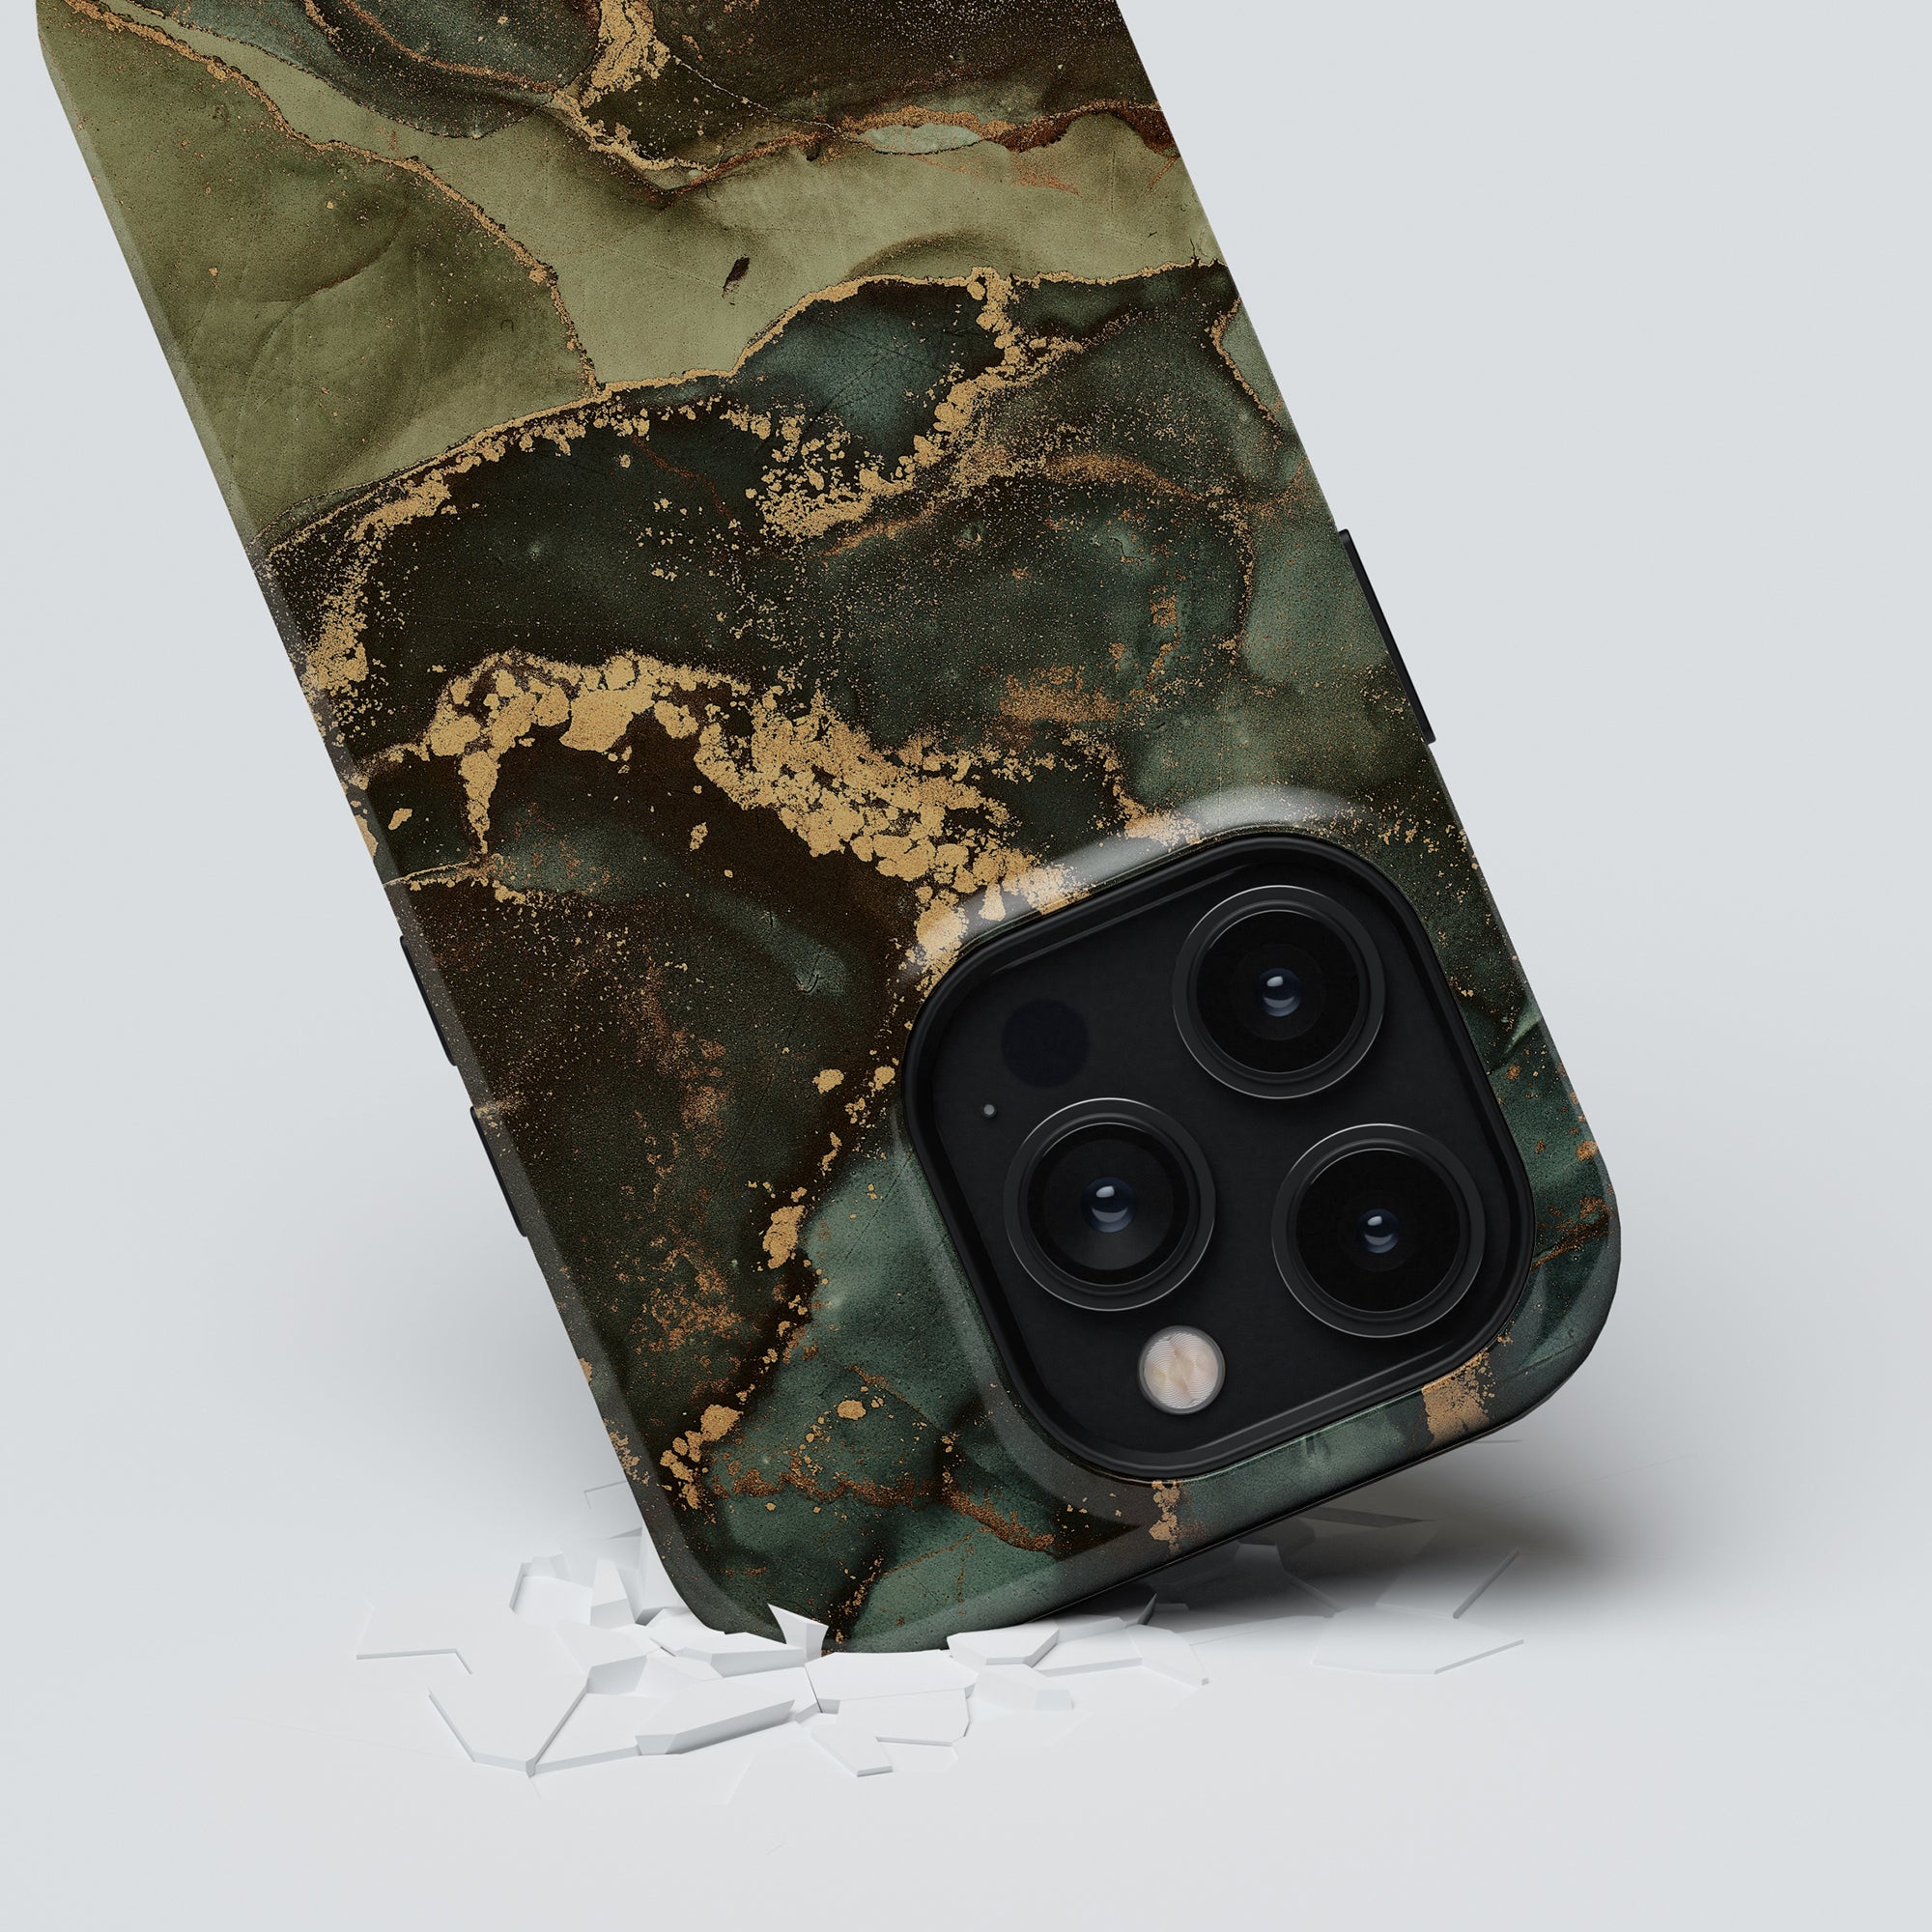 A Jade - Tufft fodral för iPhone 11 Pro. Fodralet är tillverkat av högkvalitativa material och har en fantastisk grön marmordesign. Det ger utmärkt skydd för din iPhone 11 Pro,